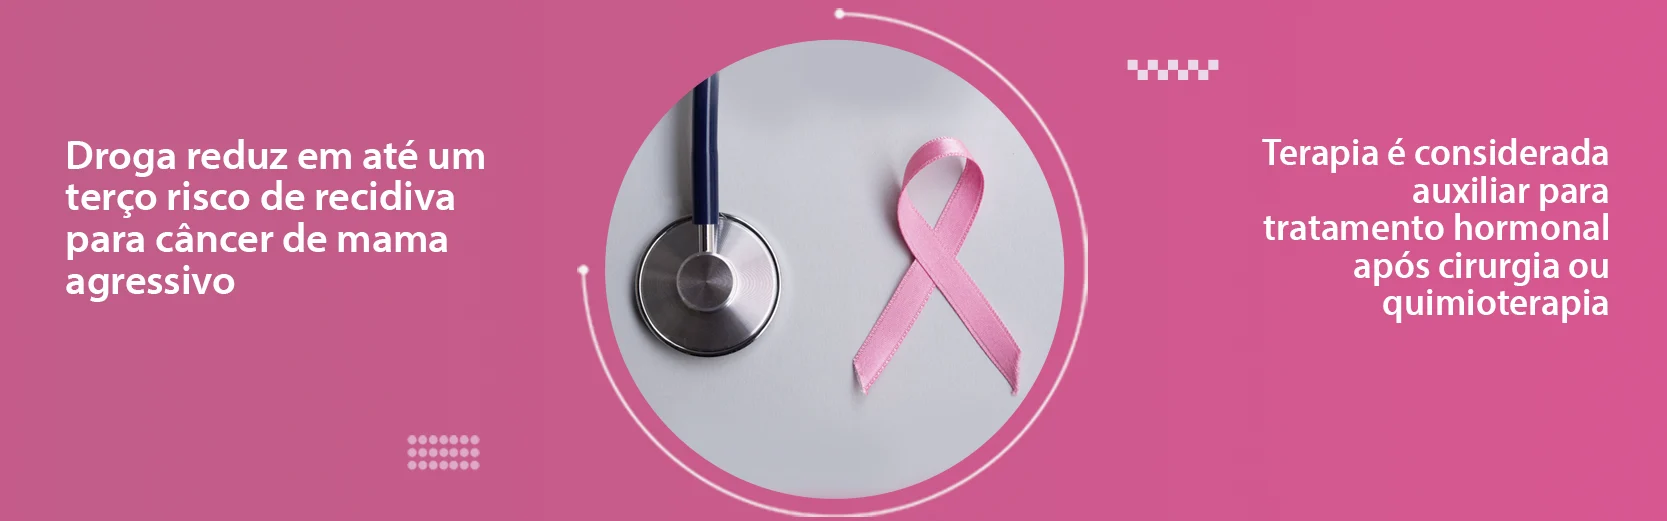 O abemaciclibe tratamento de câncer de mama de alto risco tem sucesso na redução de 32% do risco de recidiva